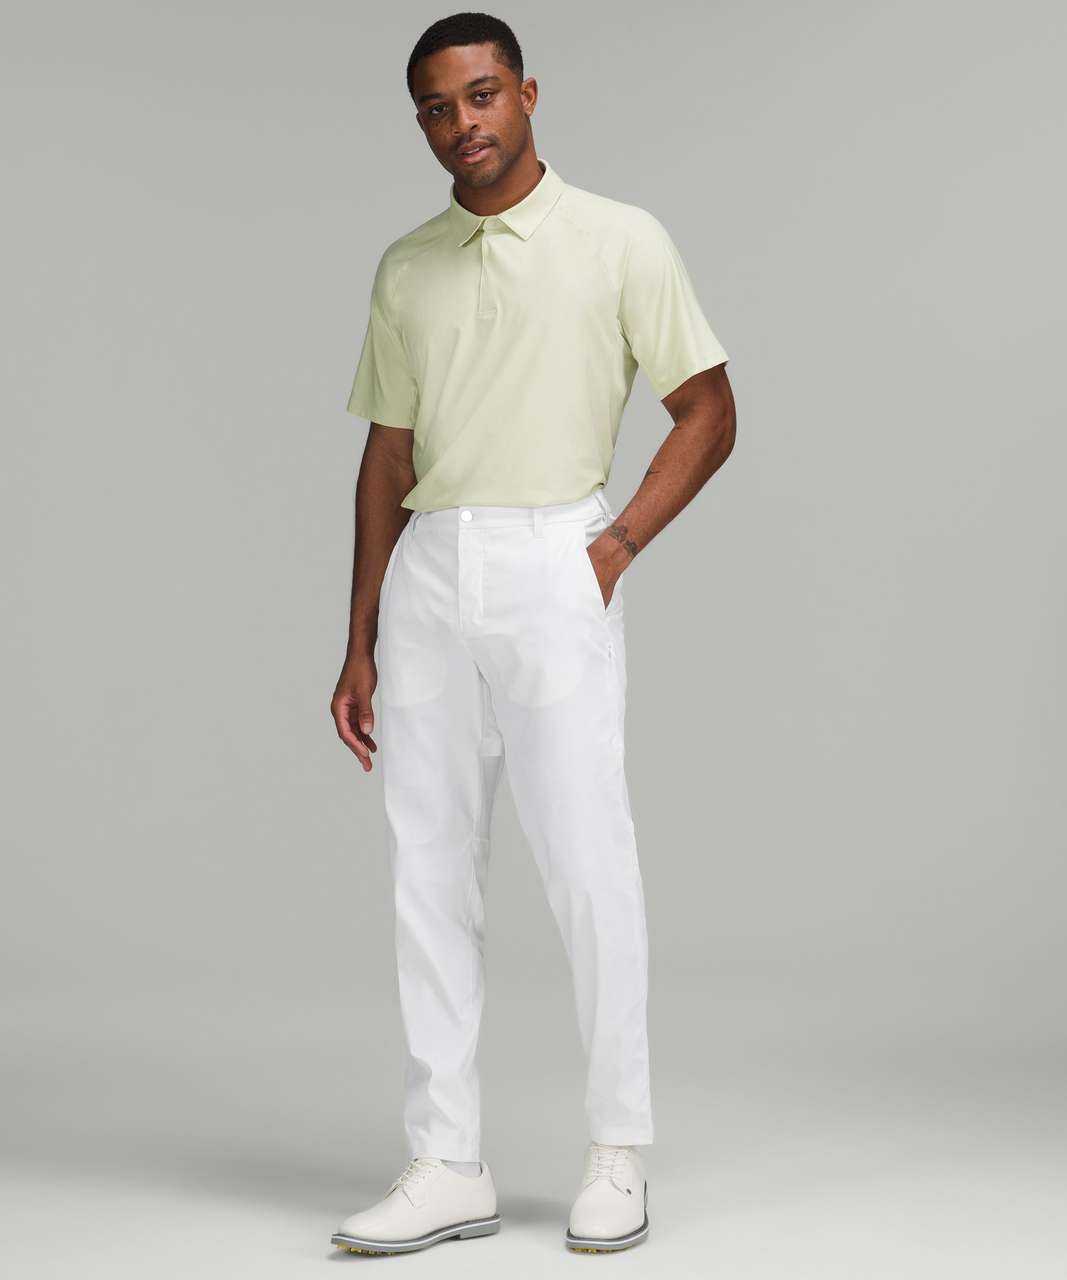 Lululemon Commission Golf Pant - White